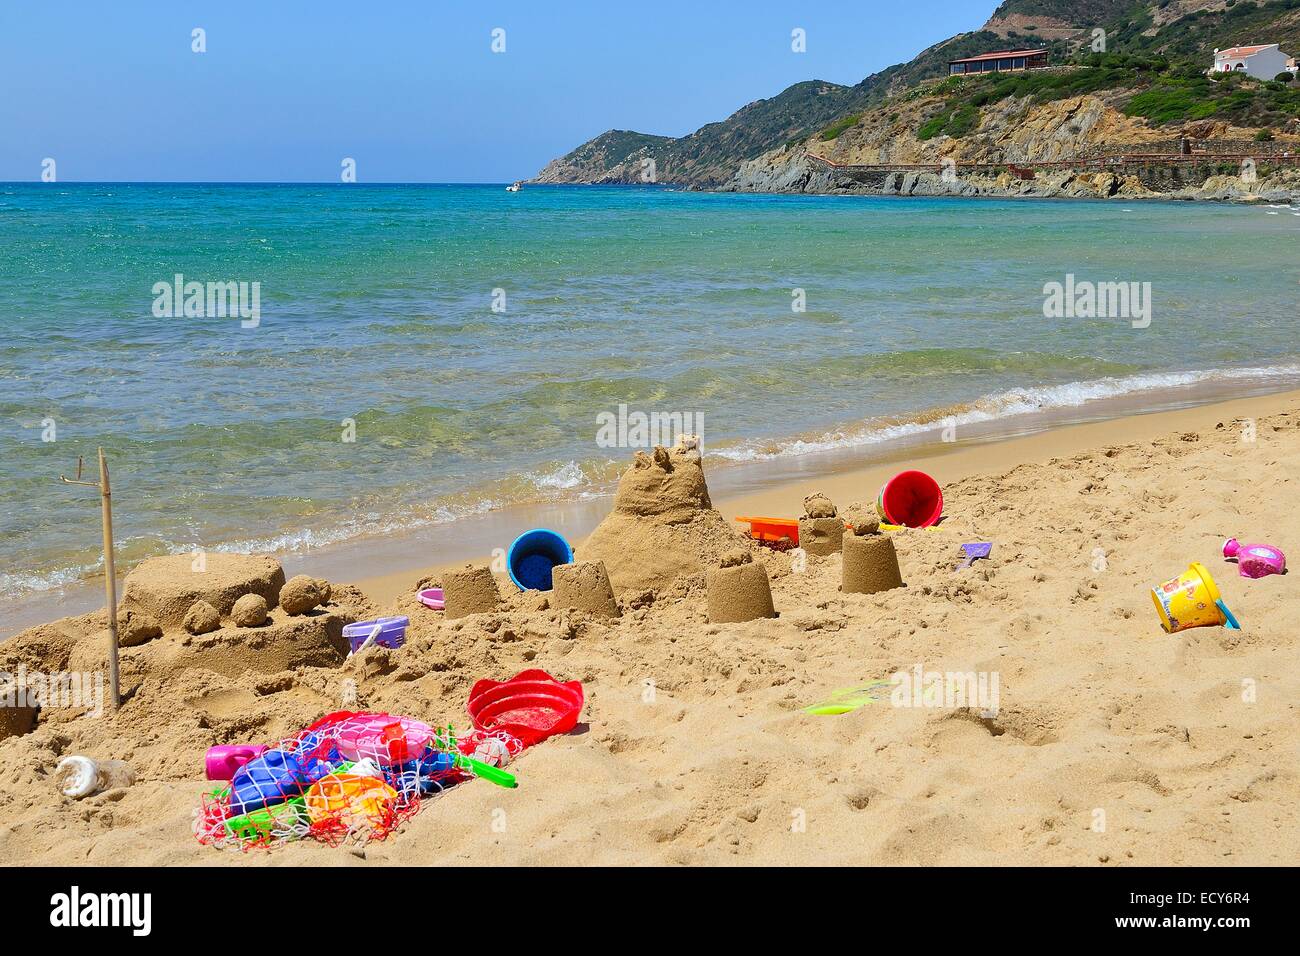 Schloss und Strand Sandspielzeug auf dem Strand, Portixeddu, Provinz Carbonia-Iglesias, Sardinien, Italien Stockfoto